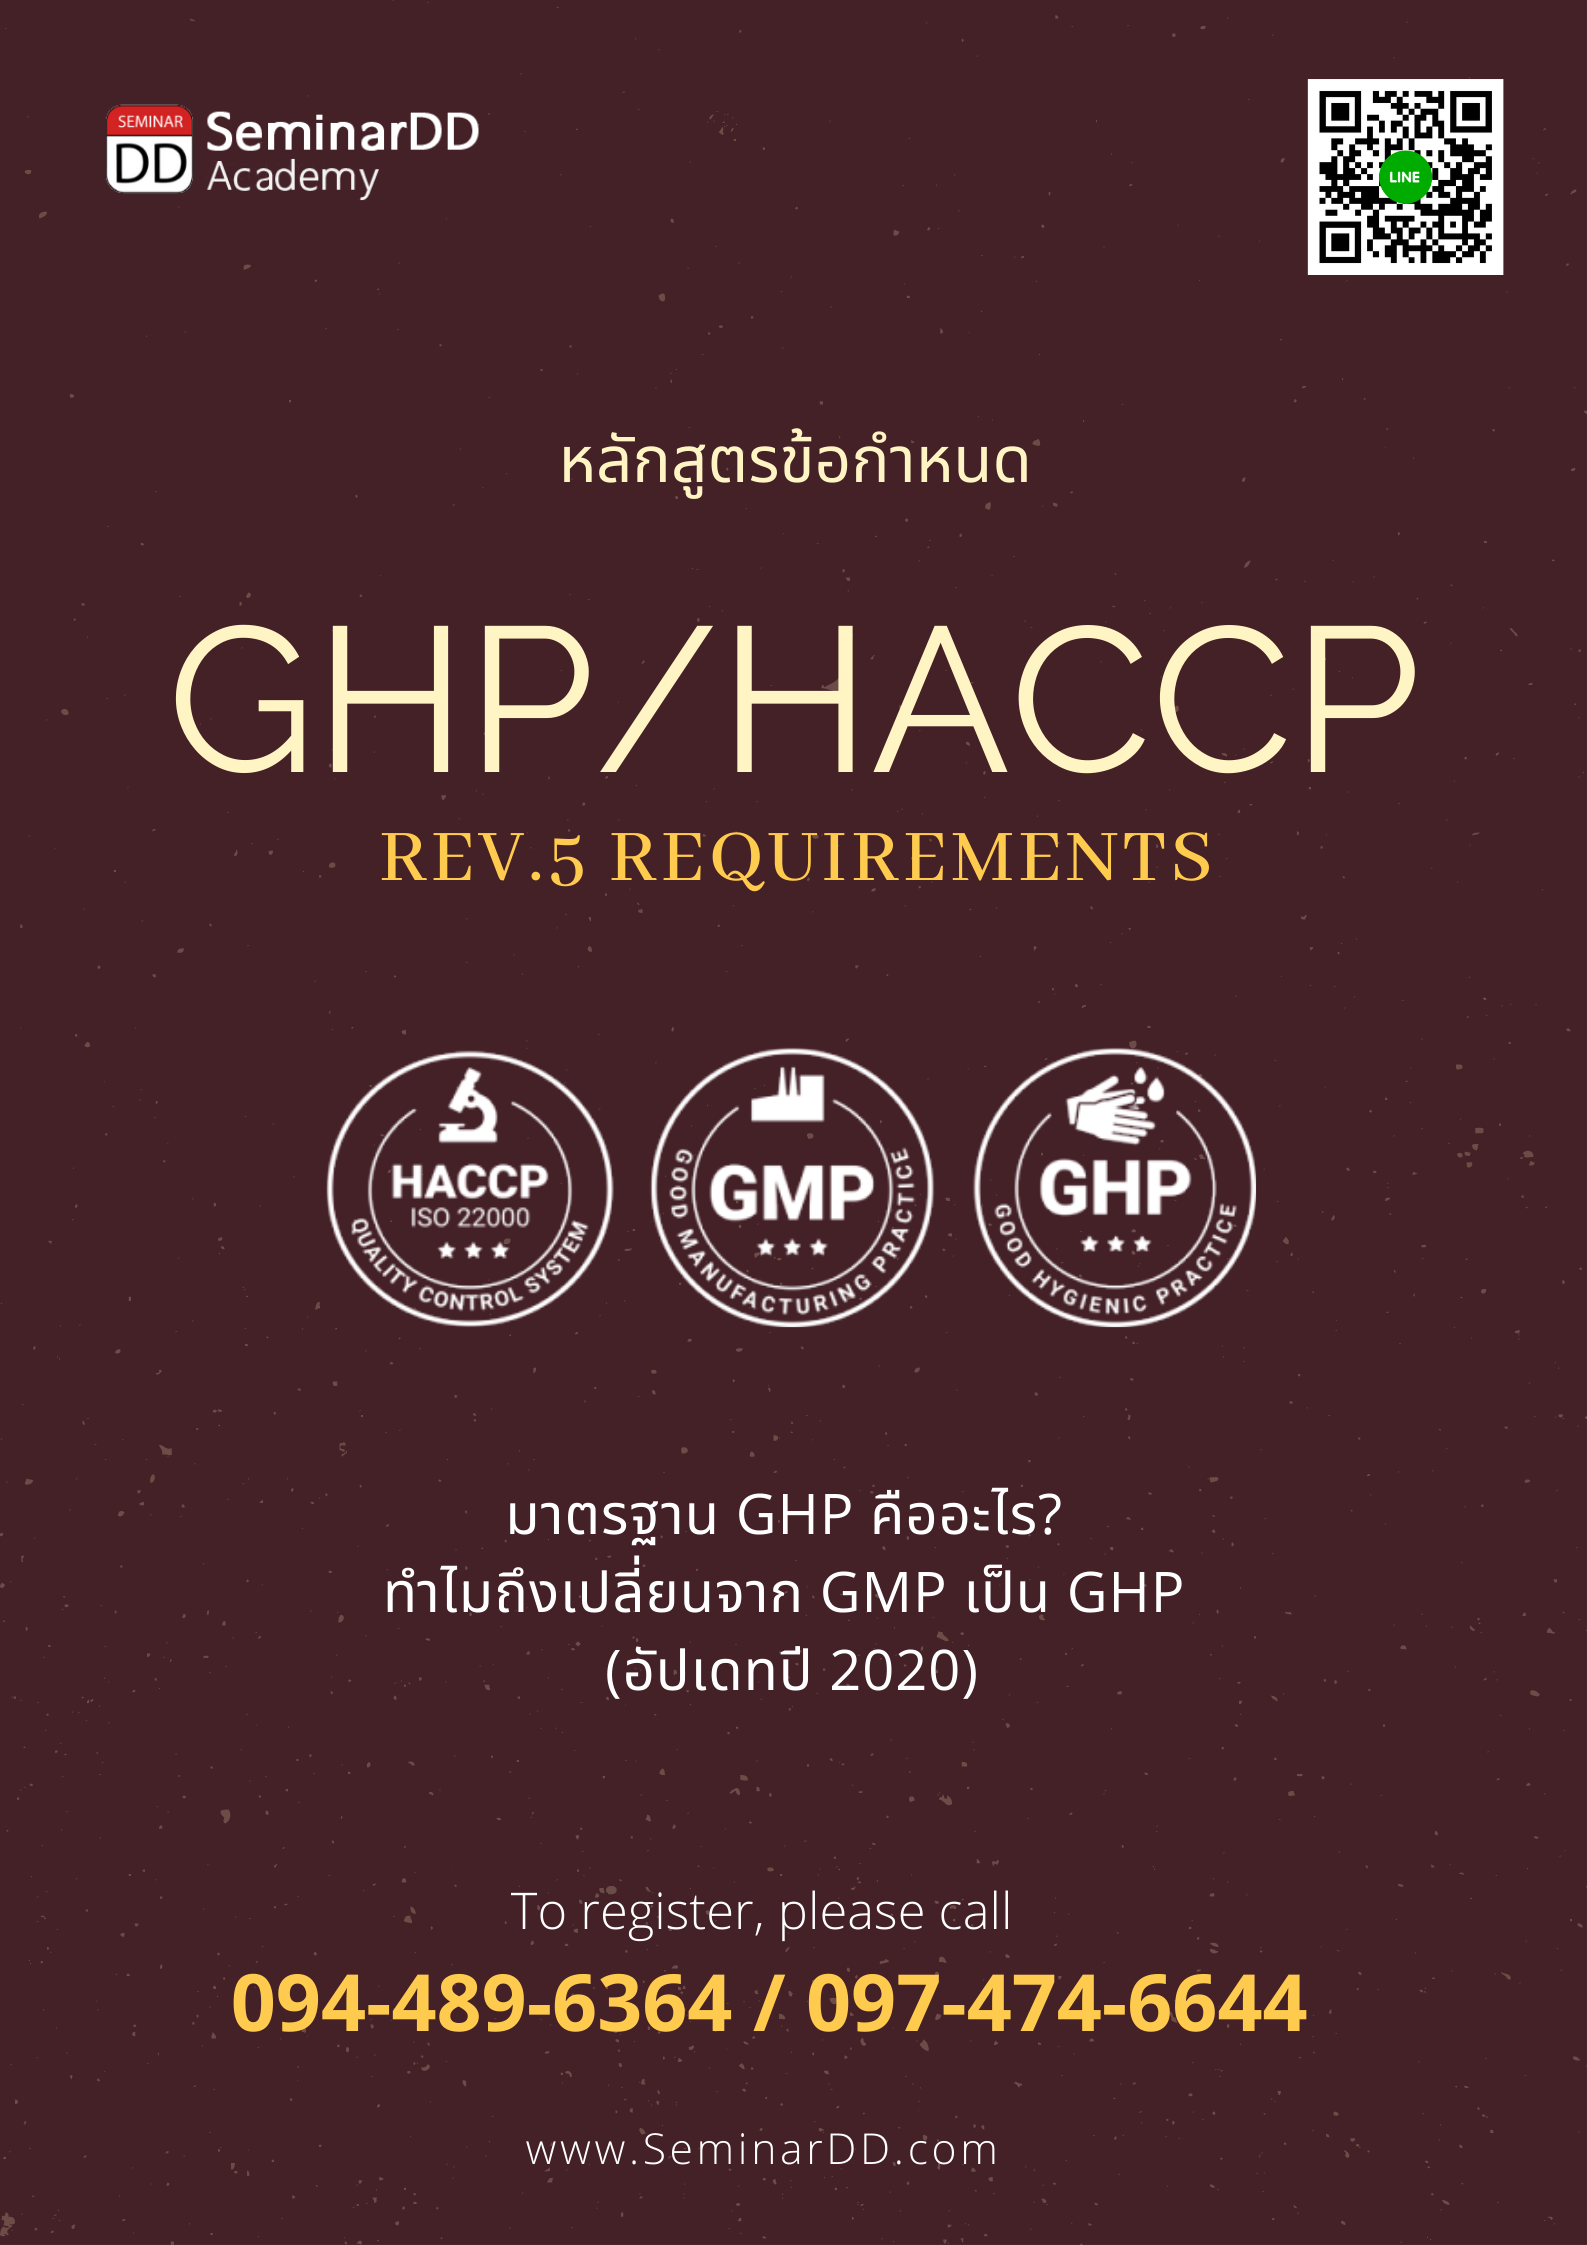 ข้อกำหนด GHPs/HACCP (GMP->GHP/HACCP Version 5 Requirements)